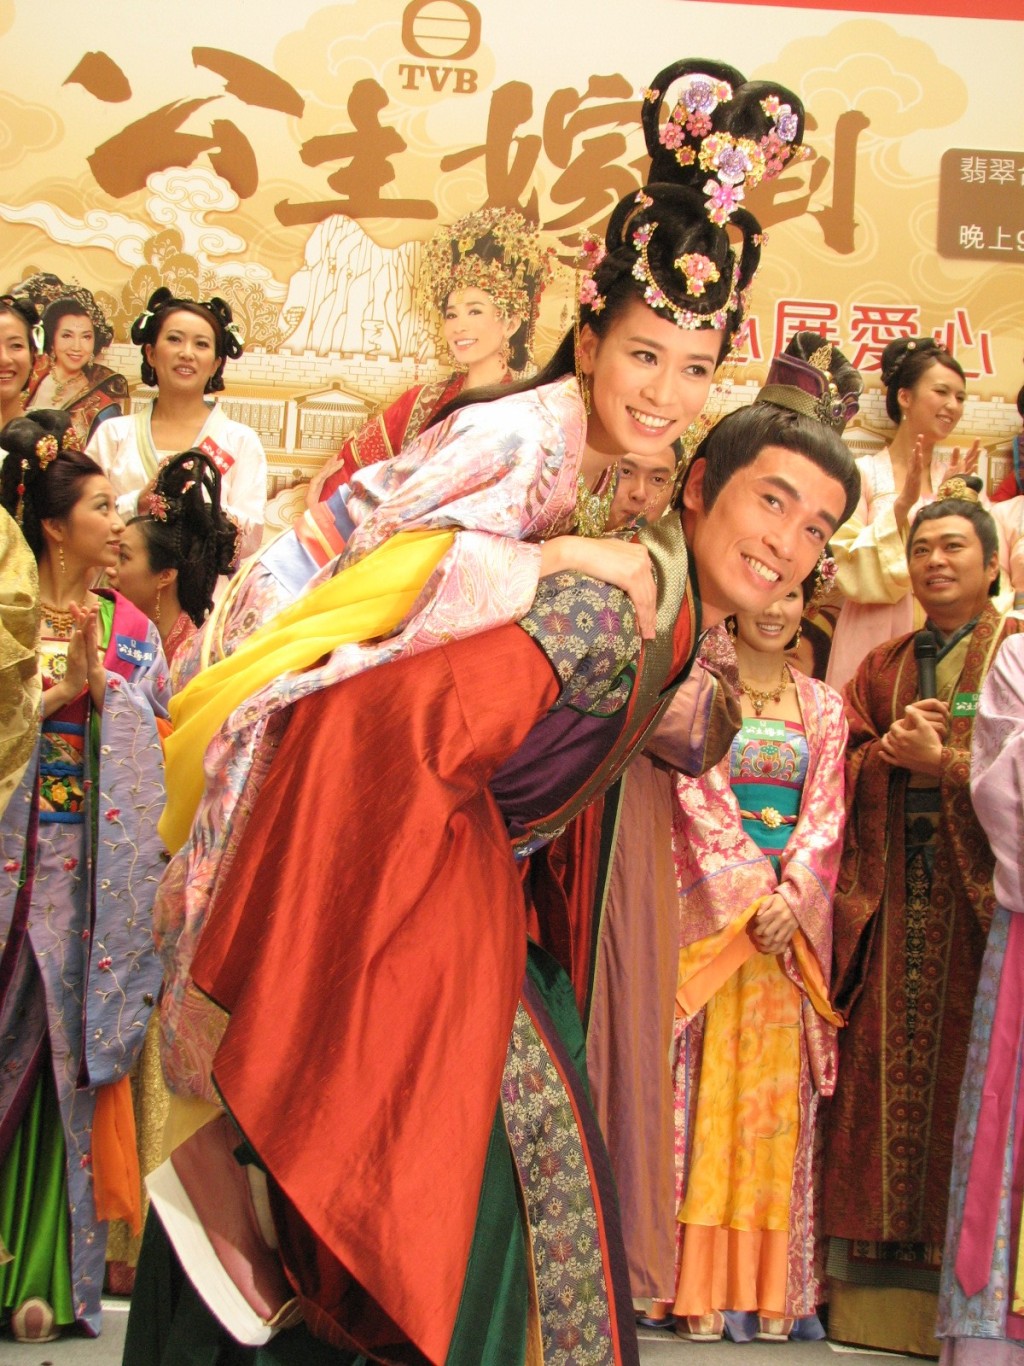 TVB趁陳豪與佘詩曼熱度未減，安排深夜重播陳豪與佘詩曼主演、2010年播出的劇集《公主嫁到》。